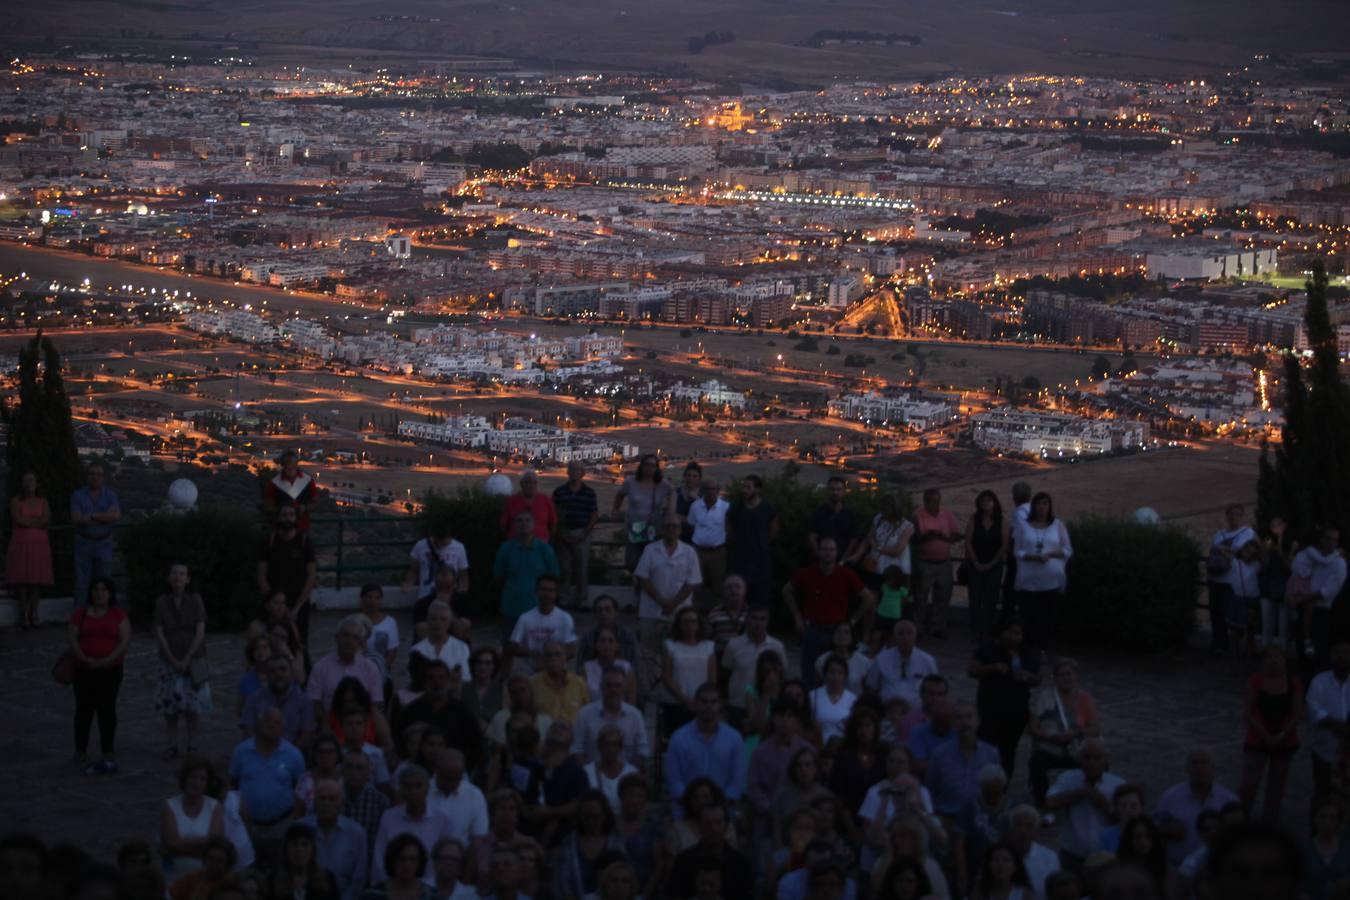 La nueva iluminación del Corazón de Jesús de las Ermitas de Córdoba, en imágenes